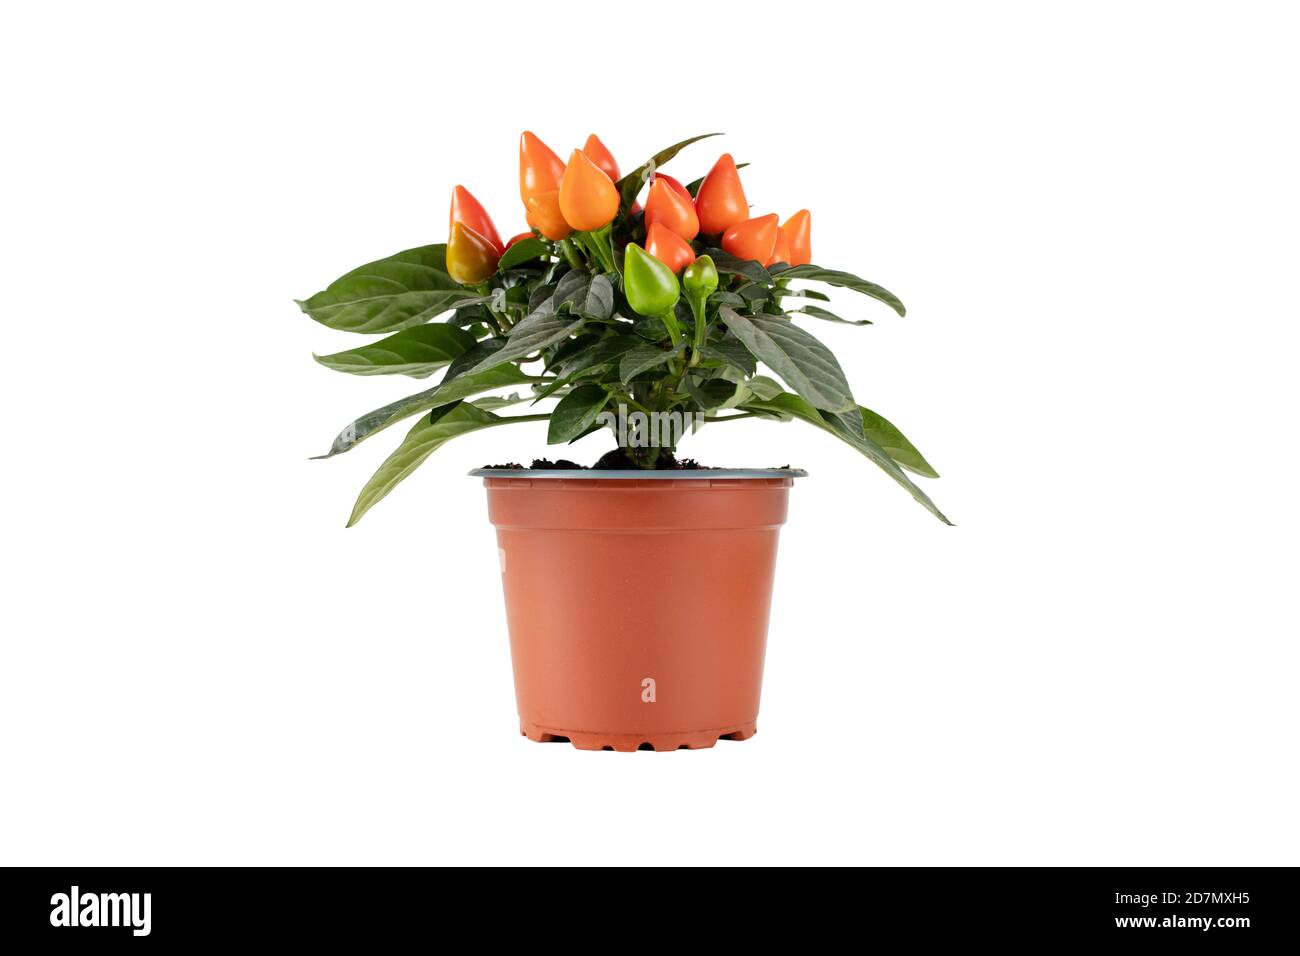 Paprikapflanze im braunen Topf isoliert auf weiß. Oranges, ornamentales Chili mit aufrechten Früchten. Stockfoto